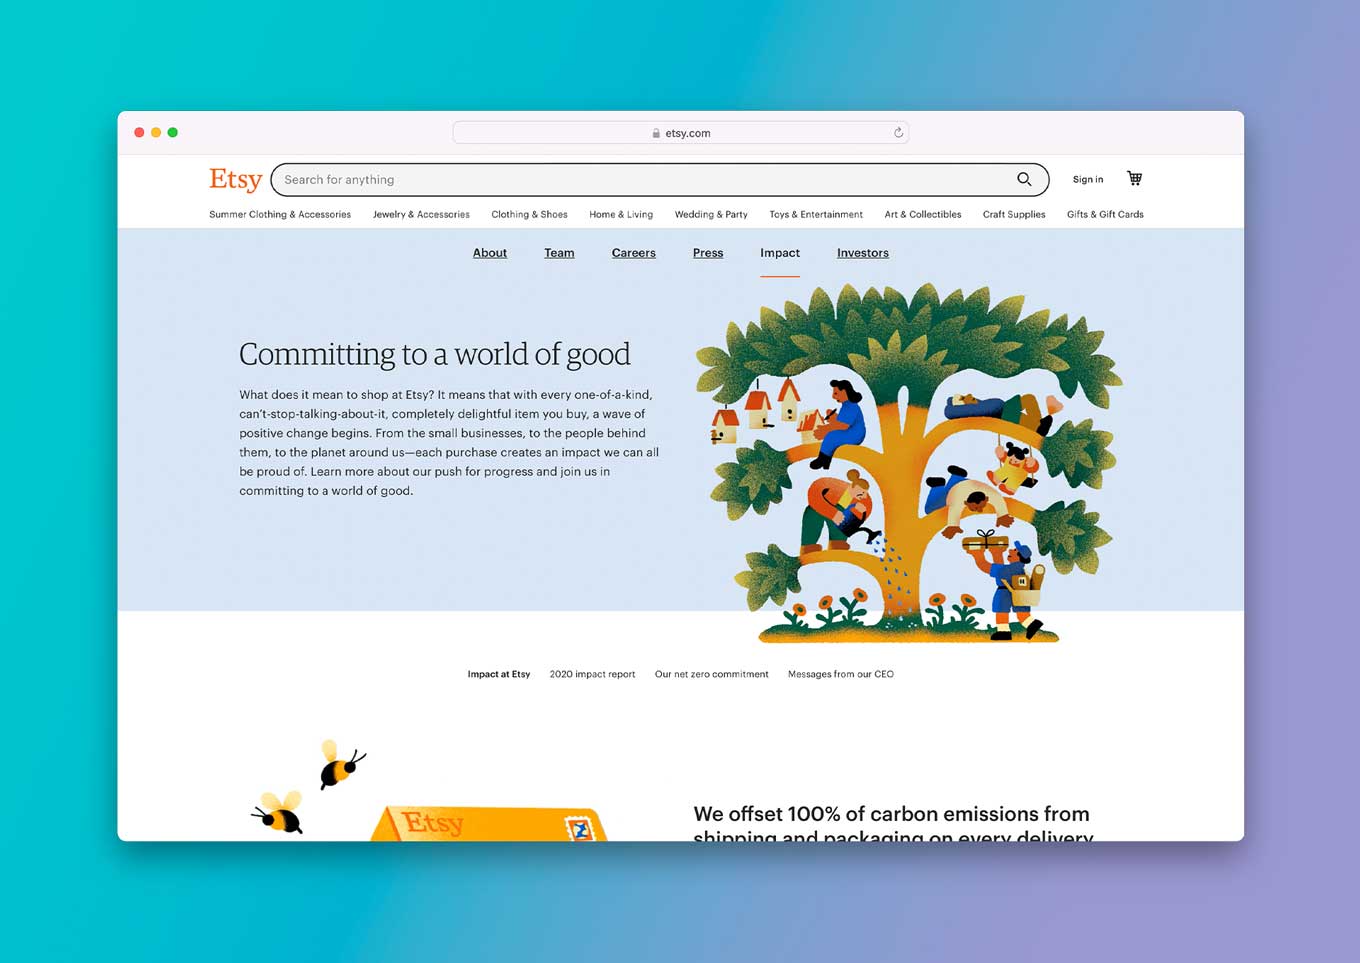 Etsy Website: "Inzetten op een wereld van goeden"